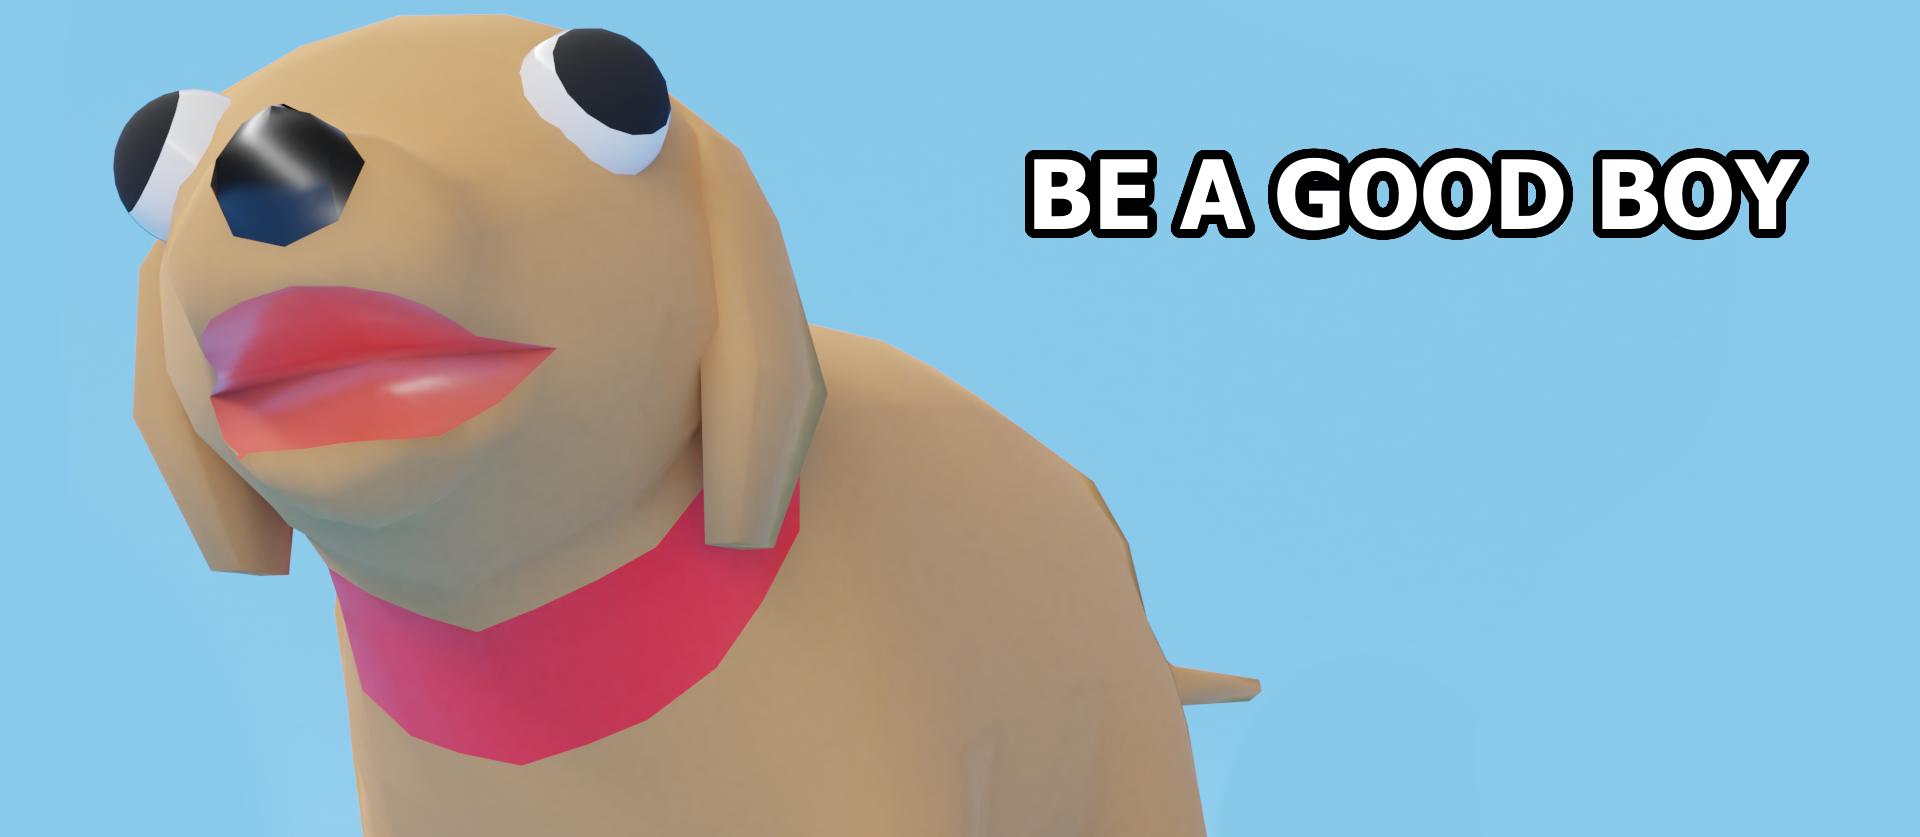 Be a good boy